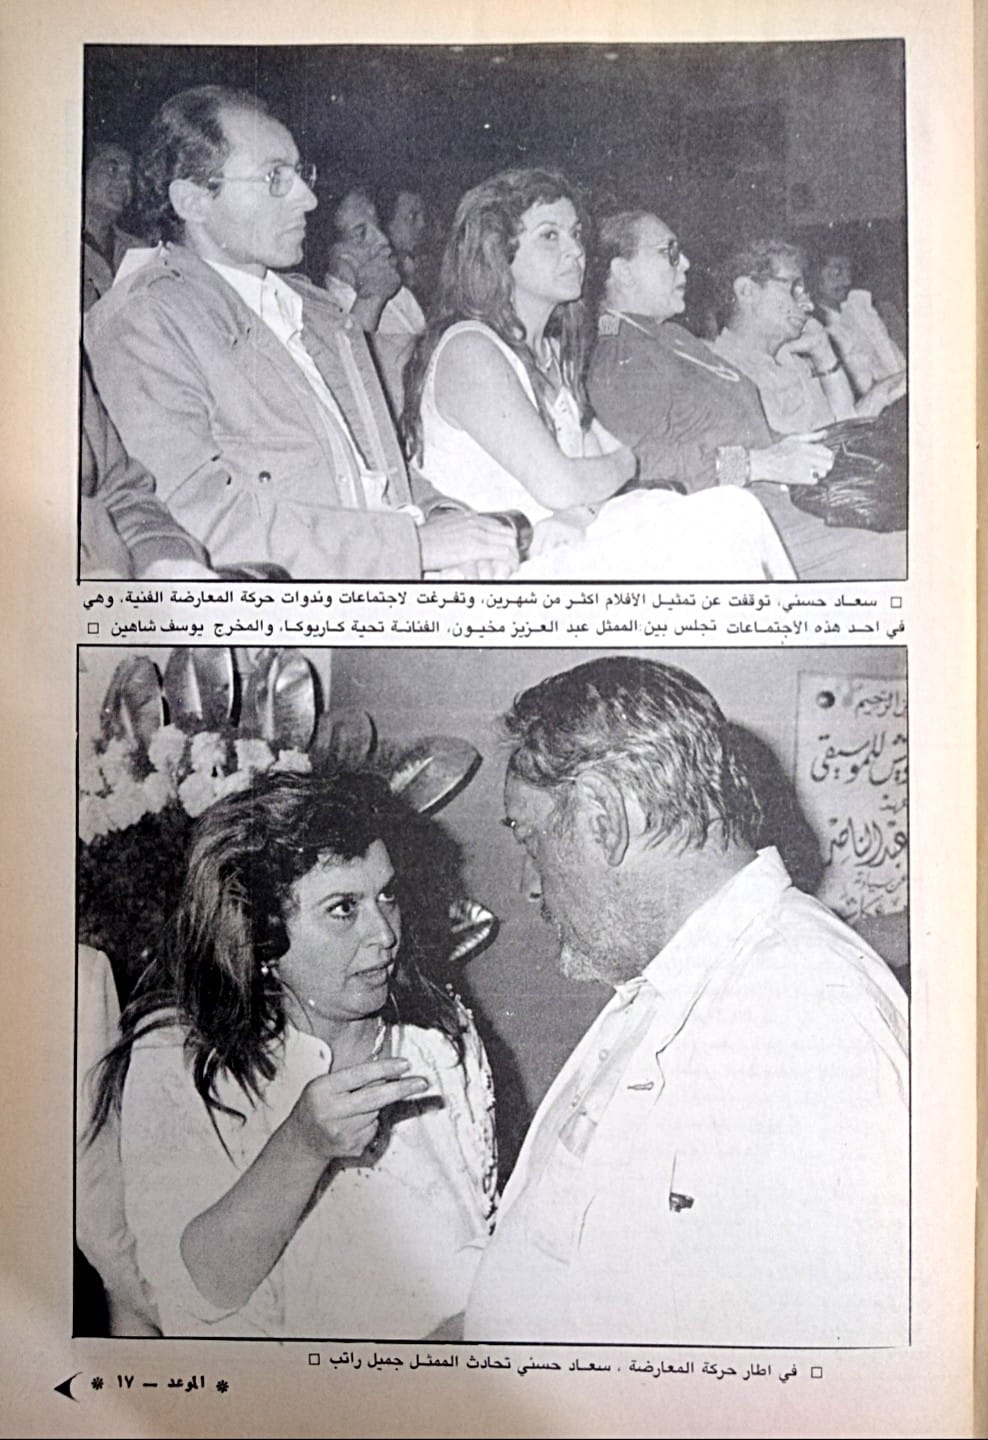 1988 - مقال صحفي : سعاد حسني .. بينها وبين الثراء ود .. مفقود ! 1988 م 215